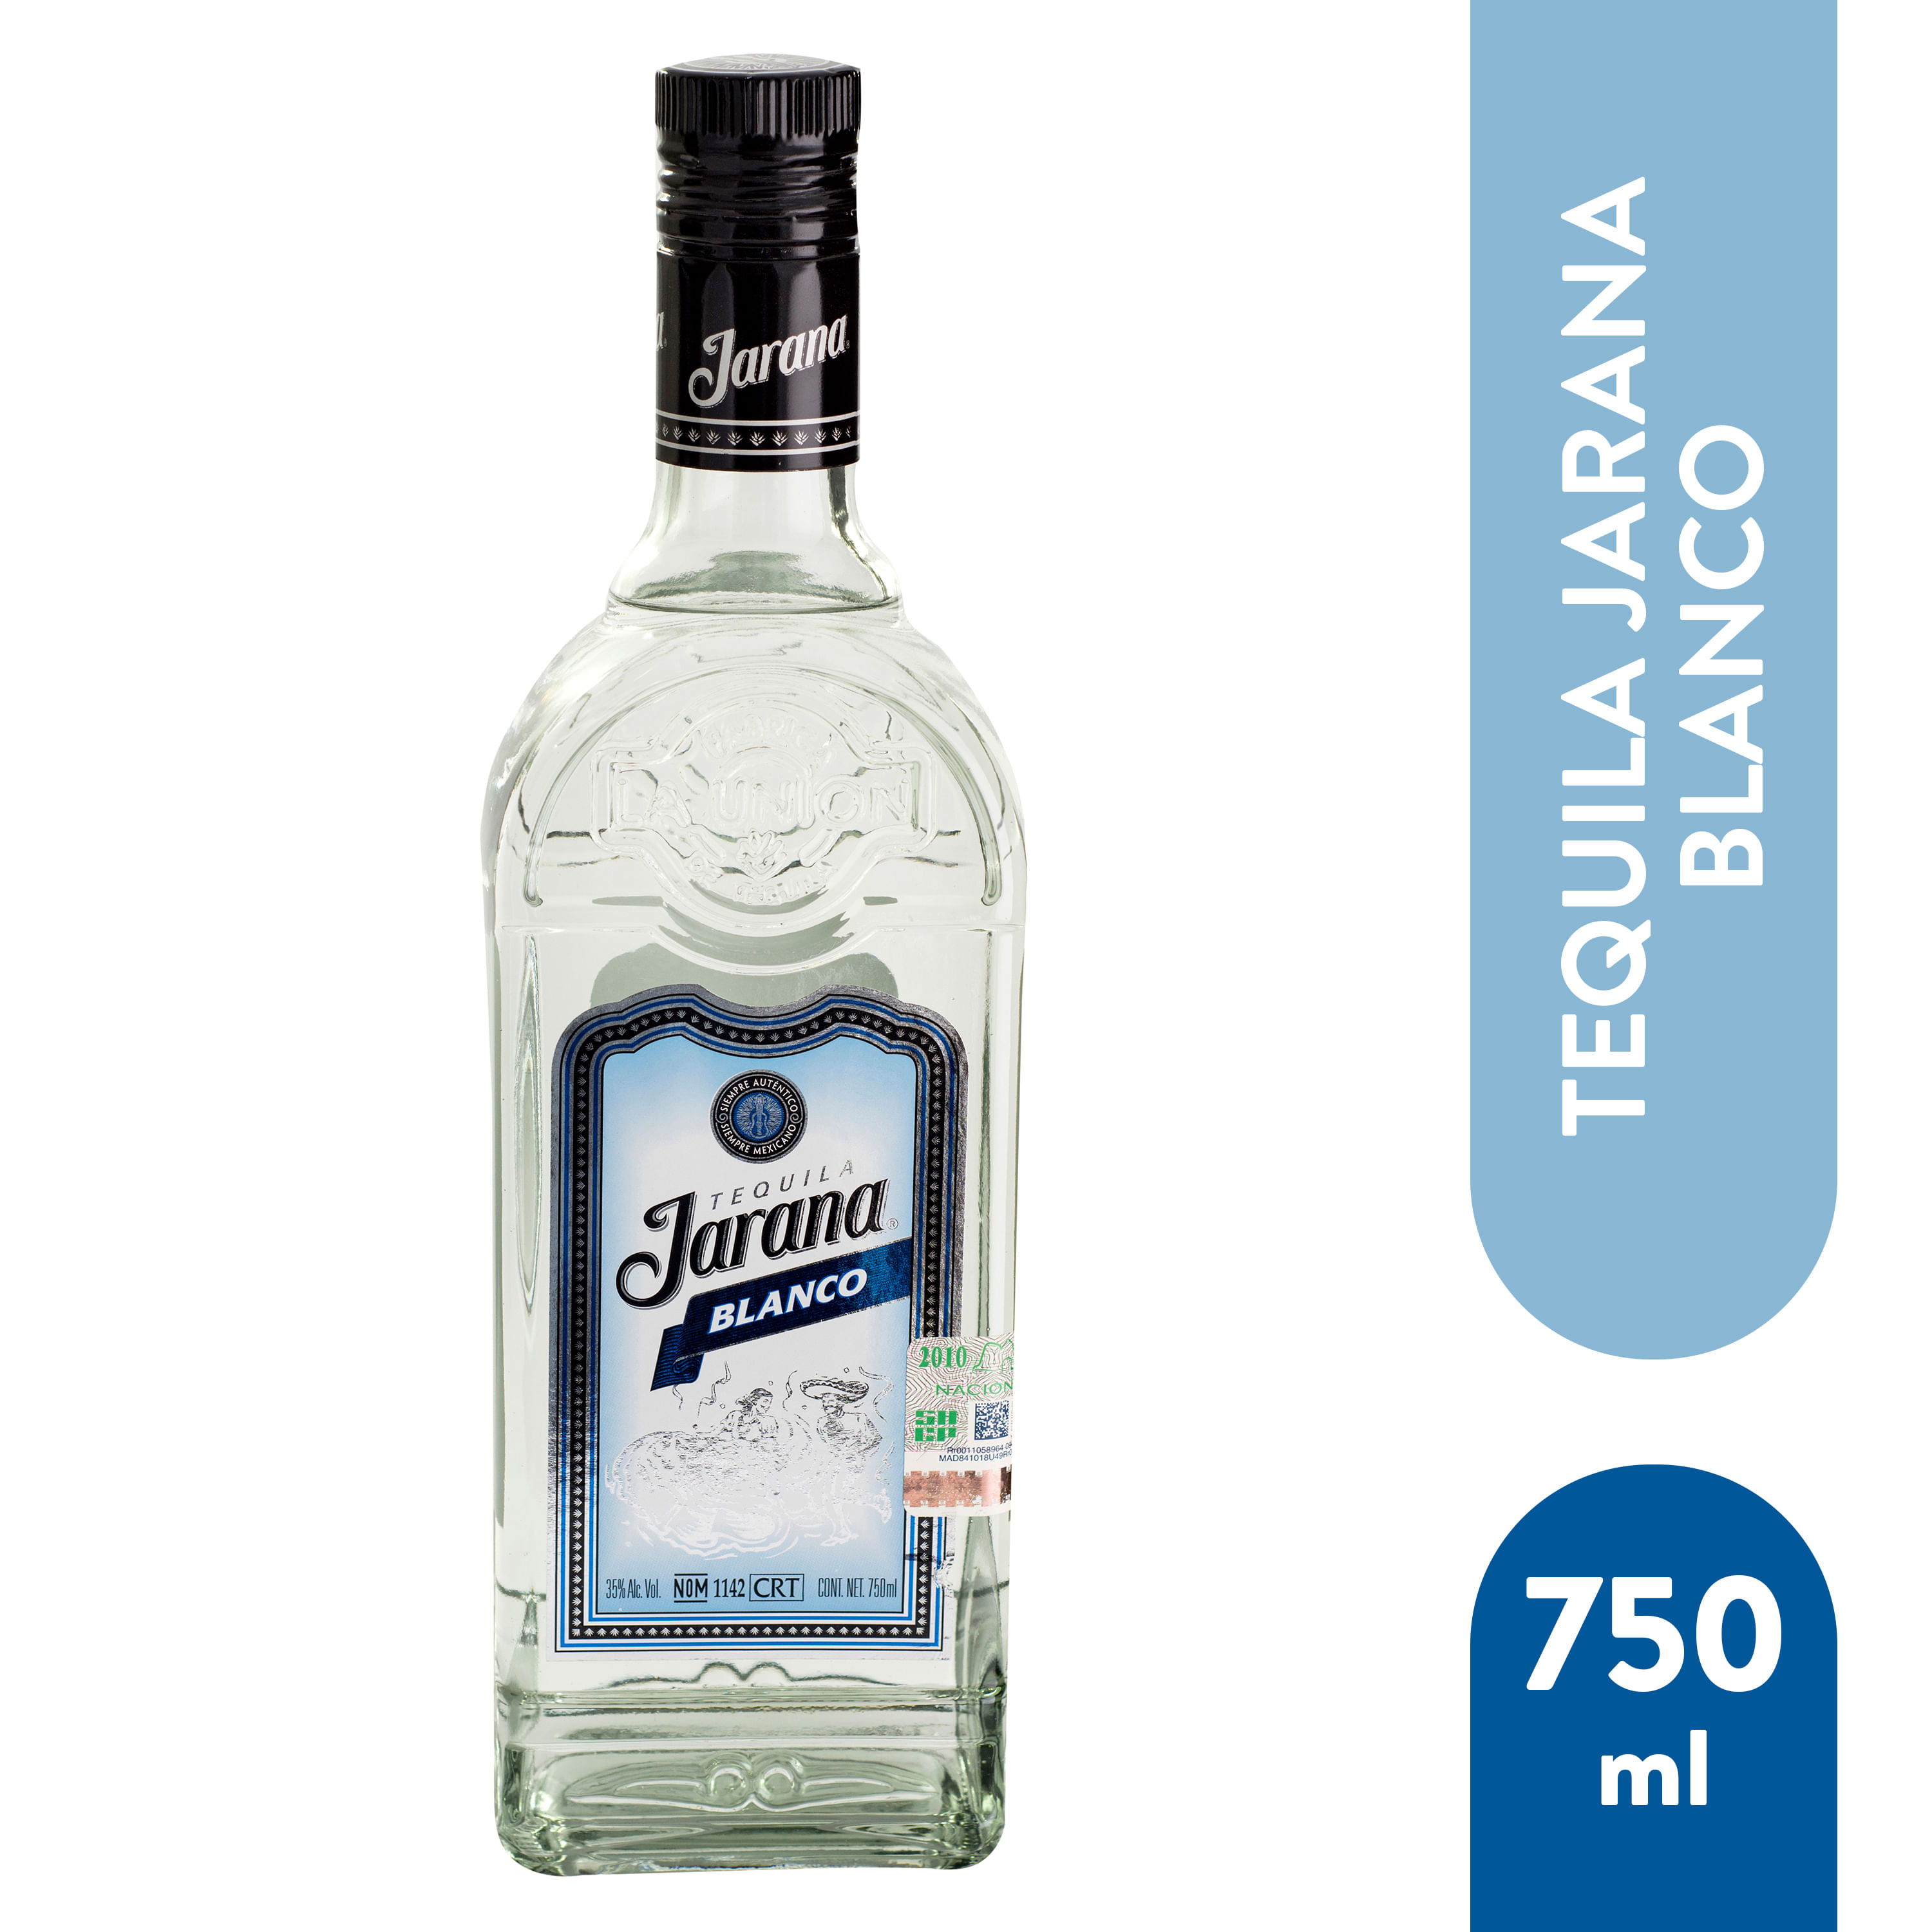 Tequila-Jarana-Blanco-750ml-1-9060